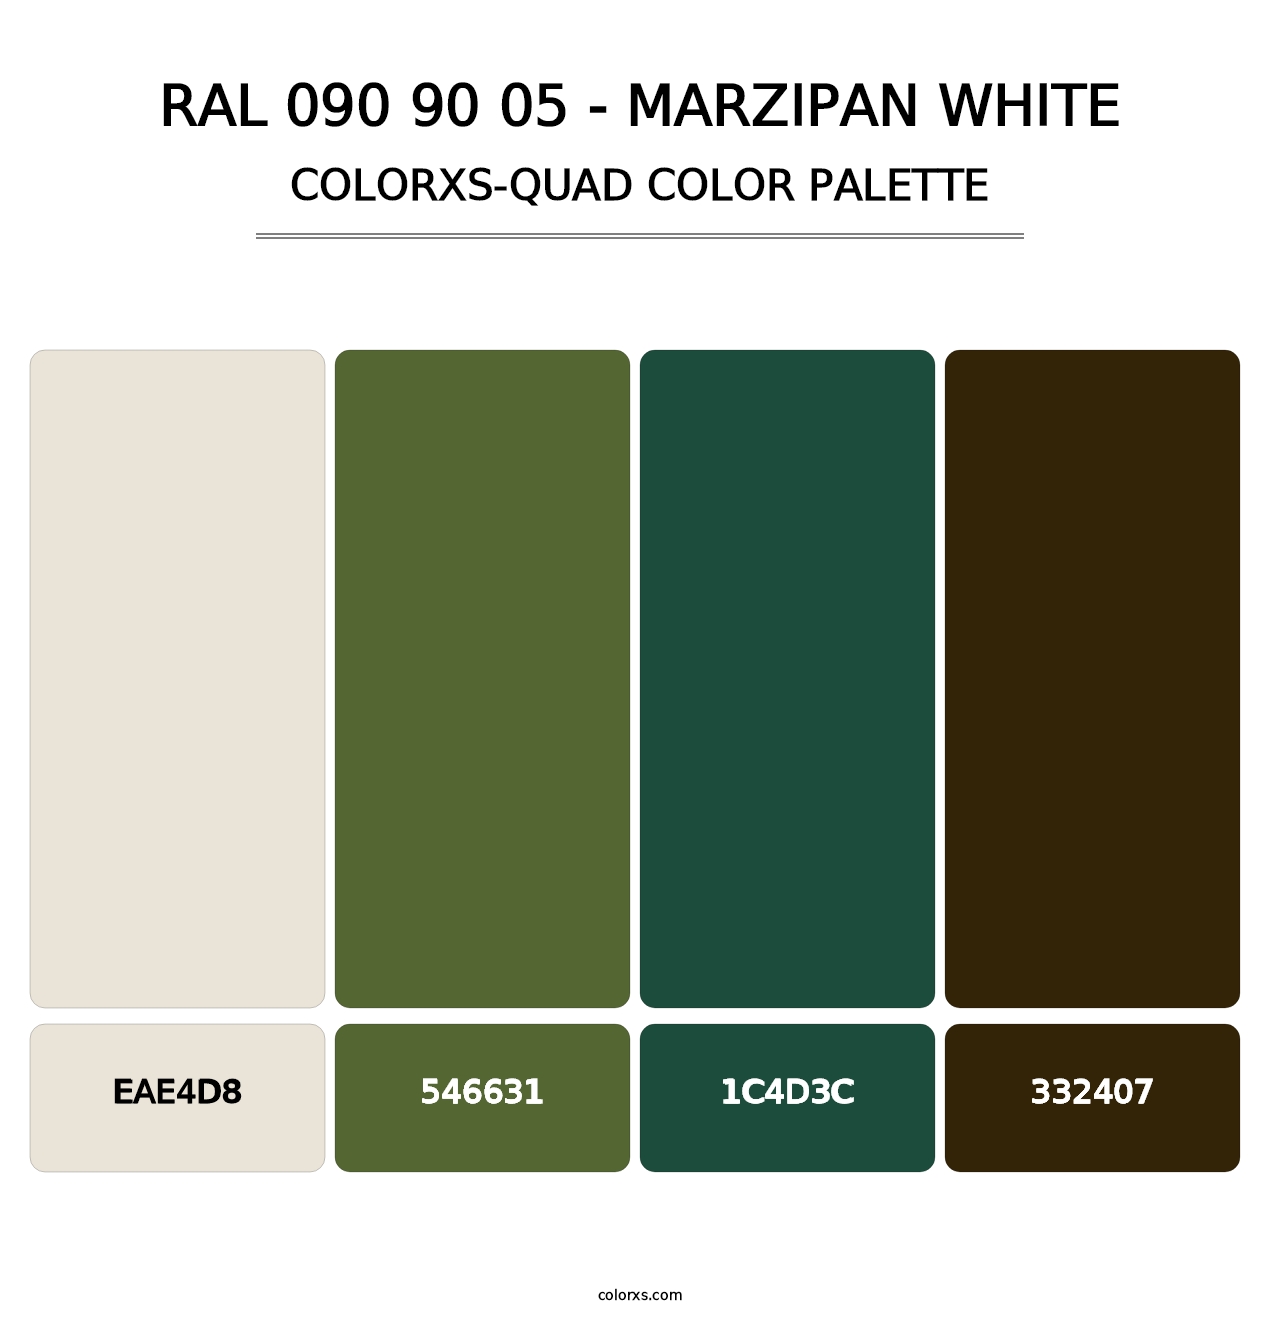 RAL 090 90 05 - Marzipan White - Colorxs Quad Palette